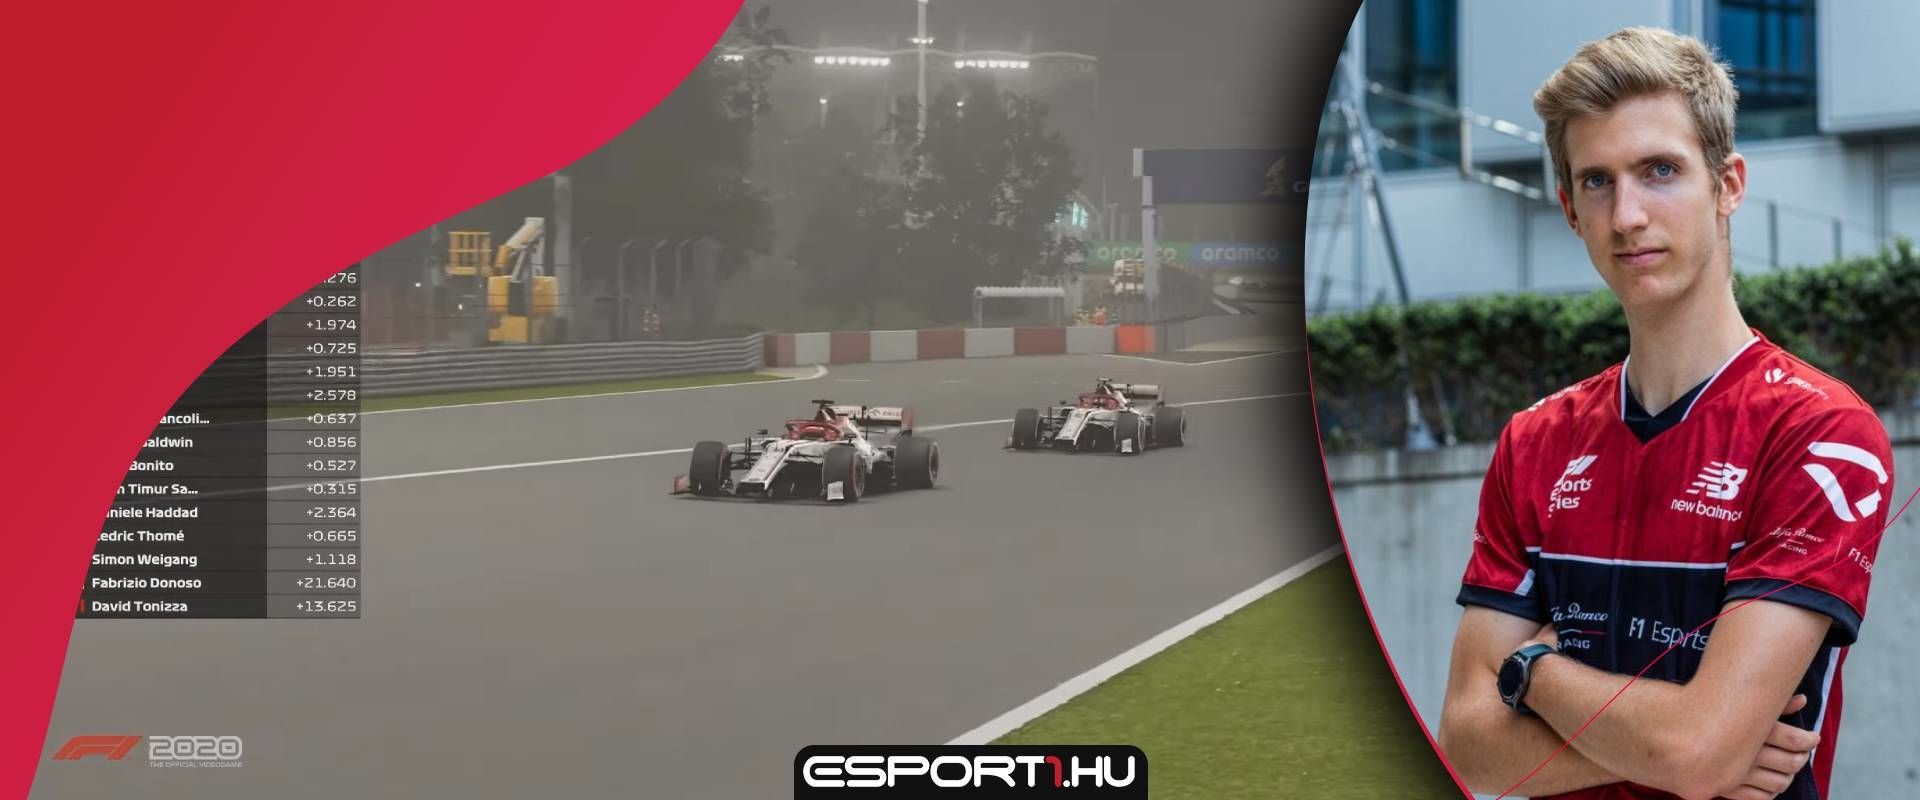 Parádés 2. helyet szerzett Bereznay Dani az F1 Esports Pro Series idei első futamán